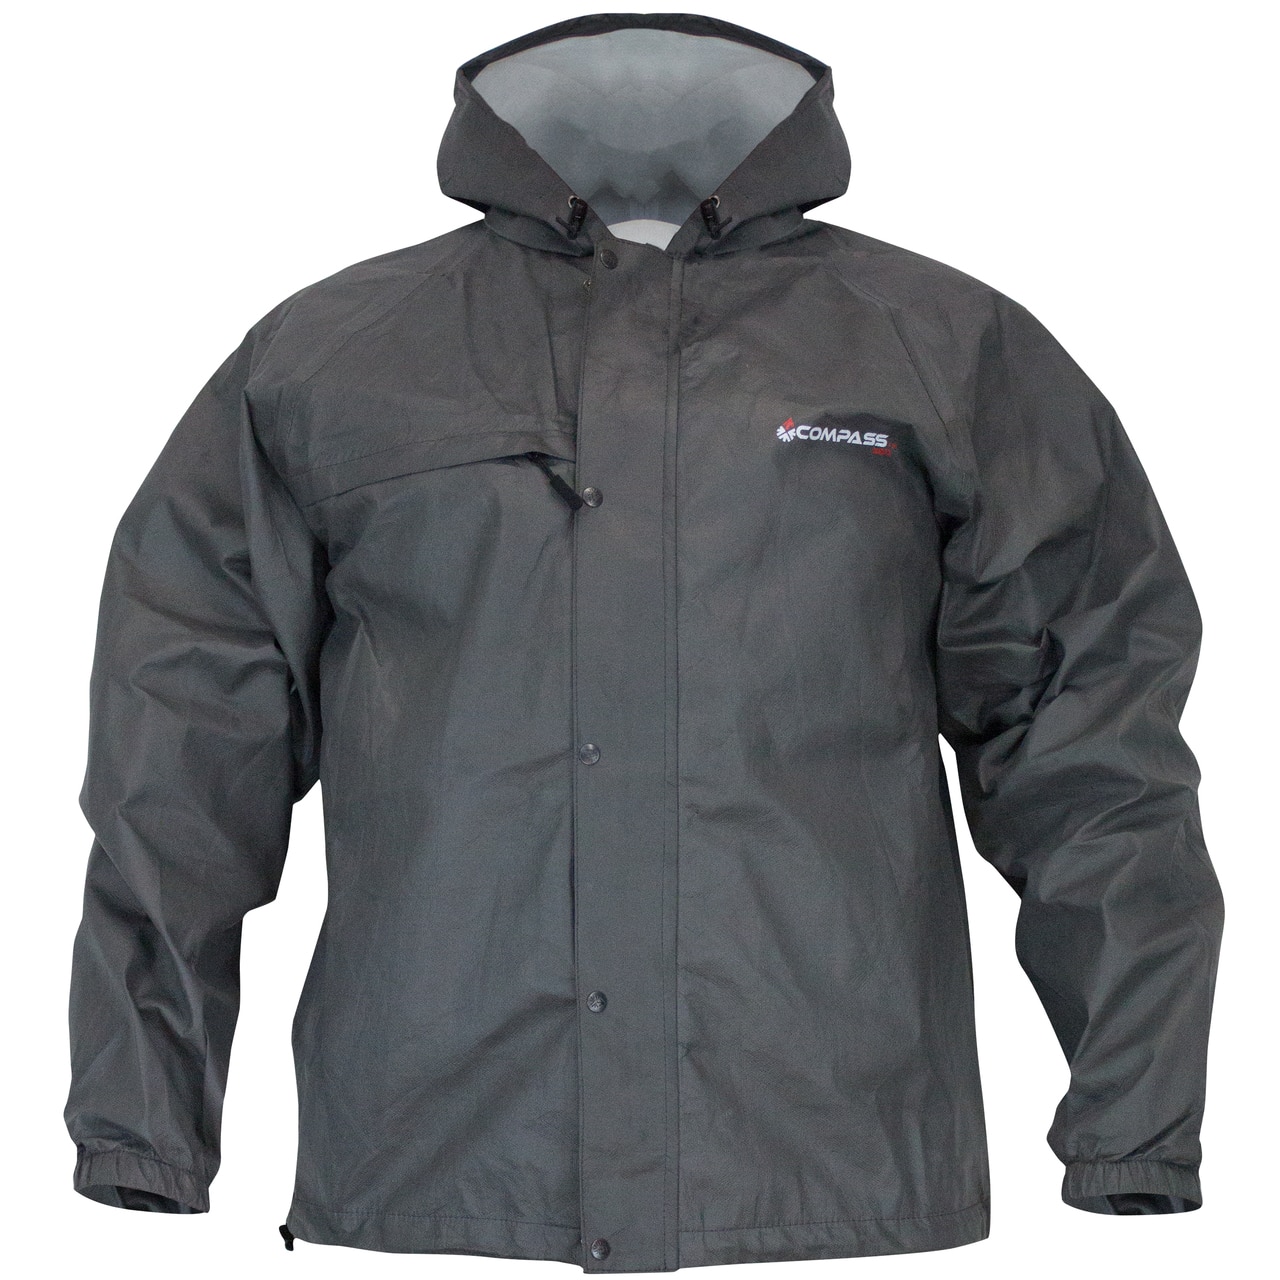 SJK Sporttek II Rain Suit jacket, black, front view